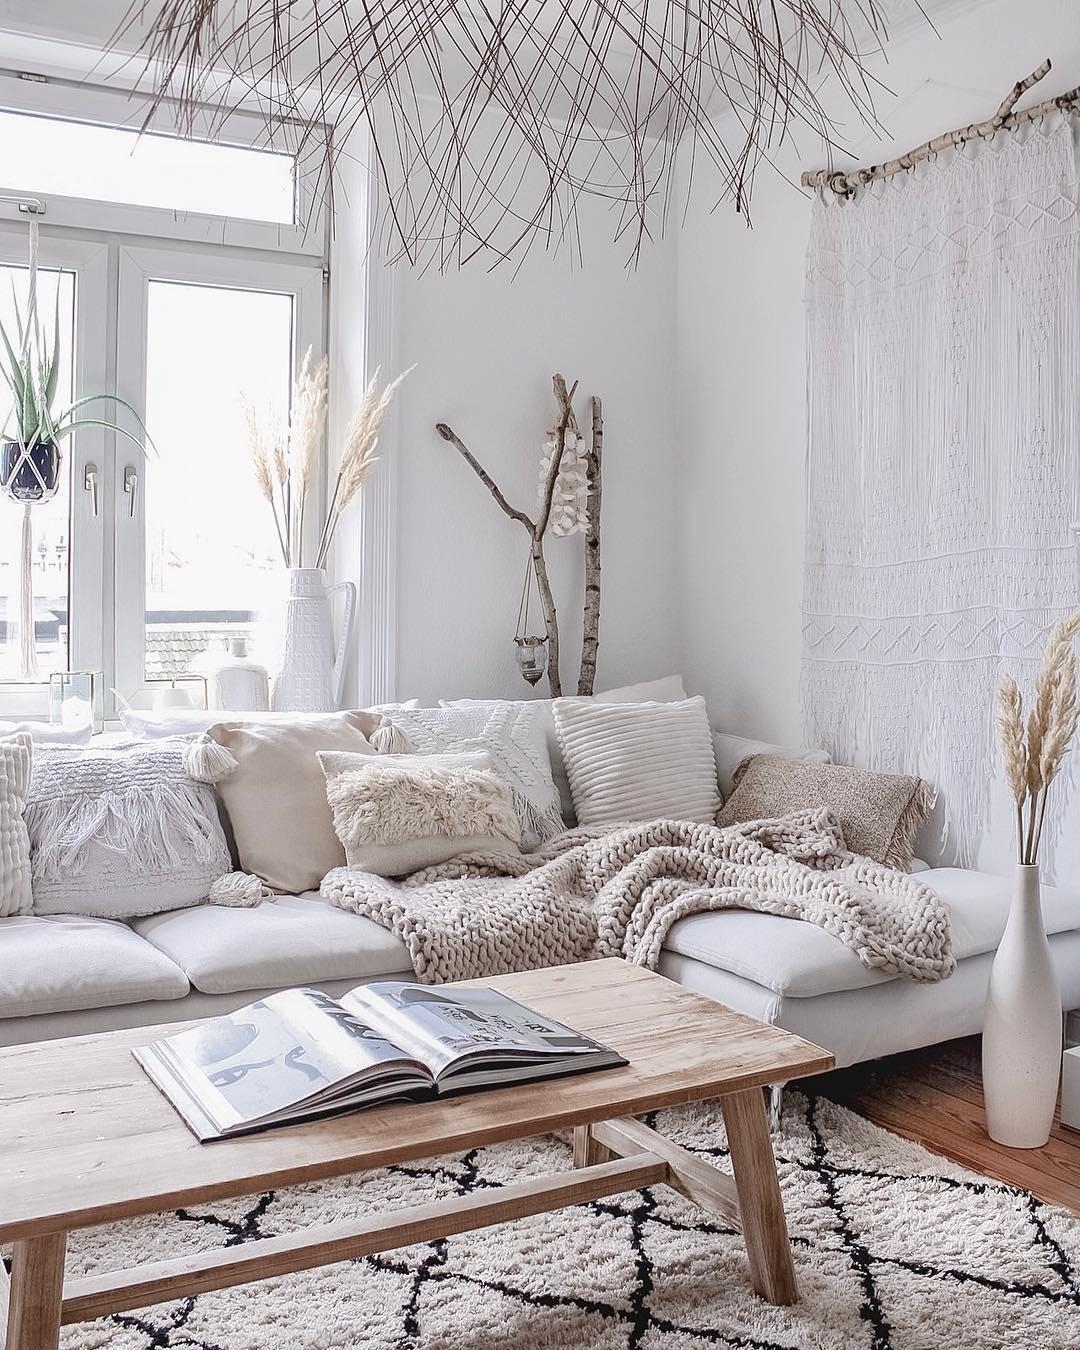 Meine #Lieblingsecke nach dem #Feierabend. 

#couchstyle #couchliebt #couch #white #cozy #white #interior #whiteliving